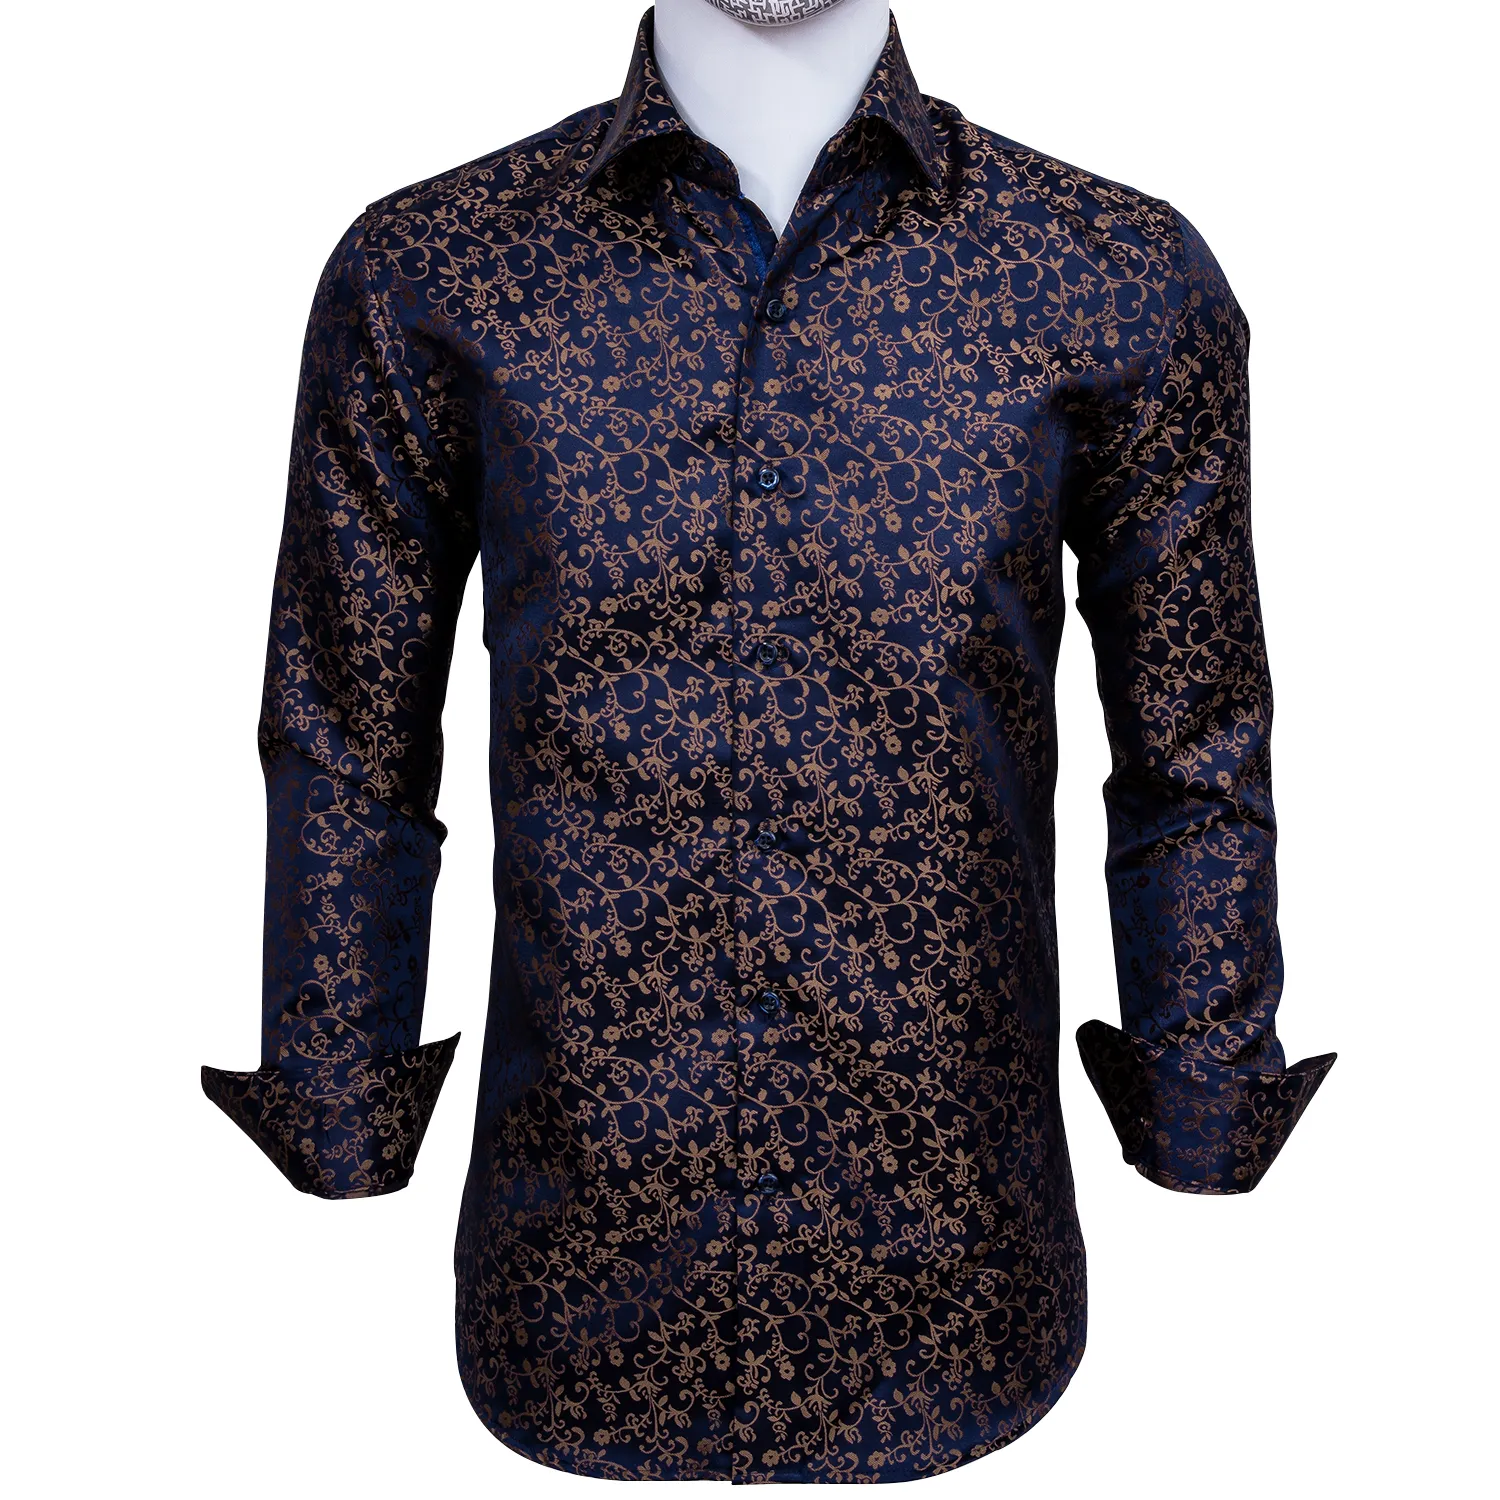 Snabb leverans Silk Mäns Långärmad T-shirts Jacquard Woven Blue Gold Floral Slim Shirts för Klänning Party Bröllop Utsökt Fashion Cy-0006